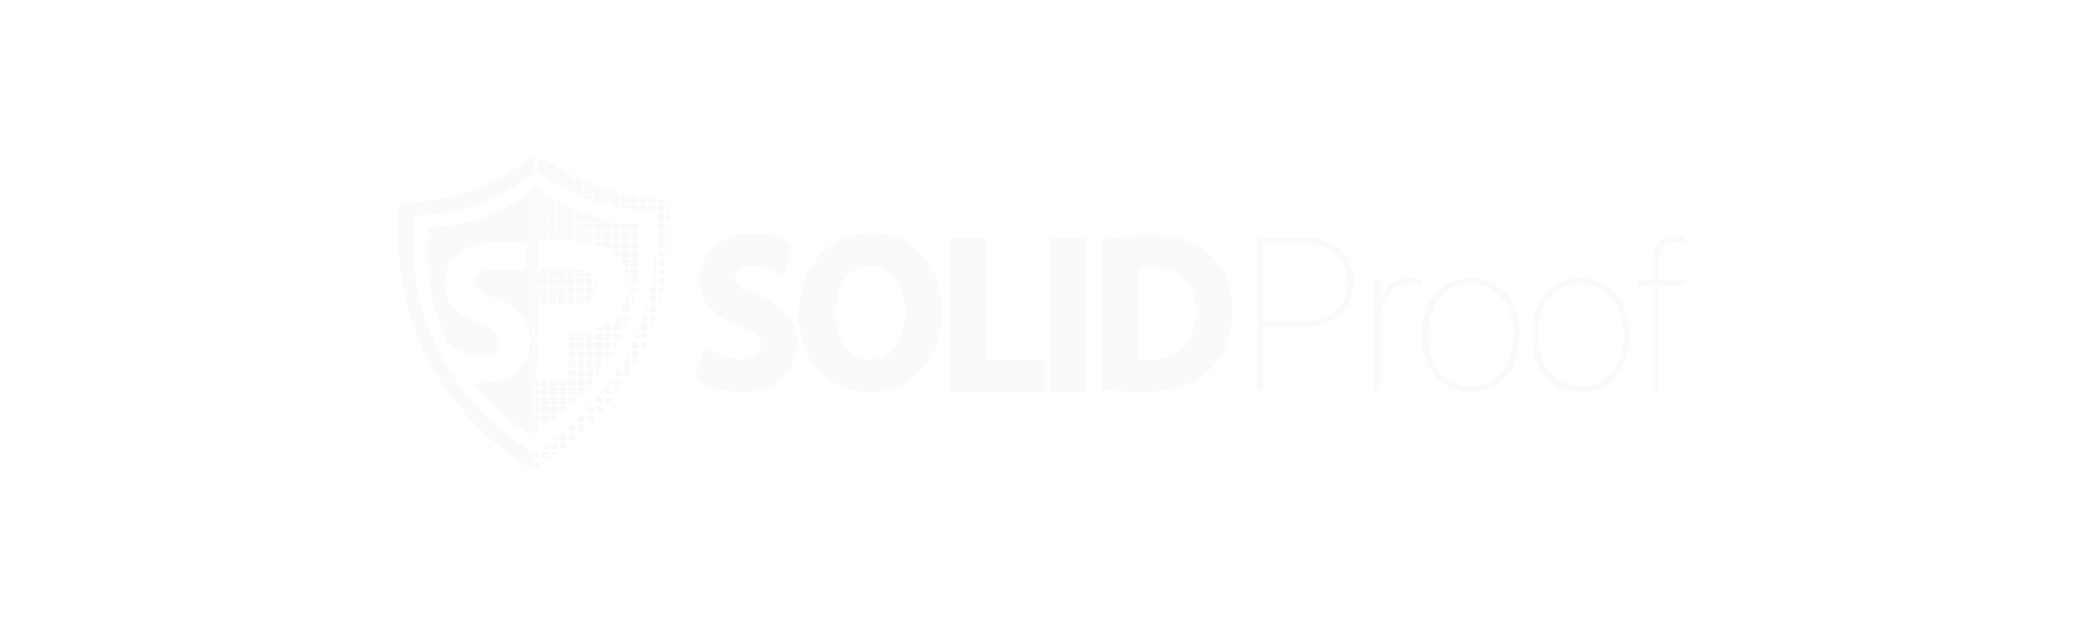 SolidProof